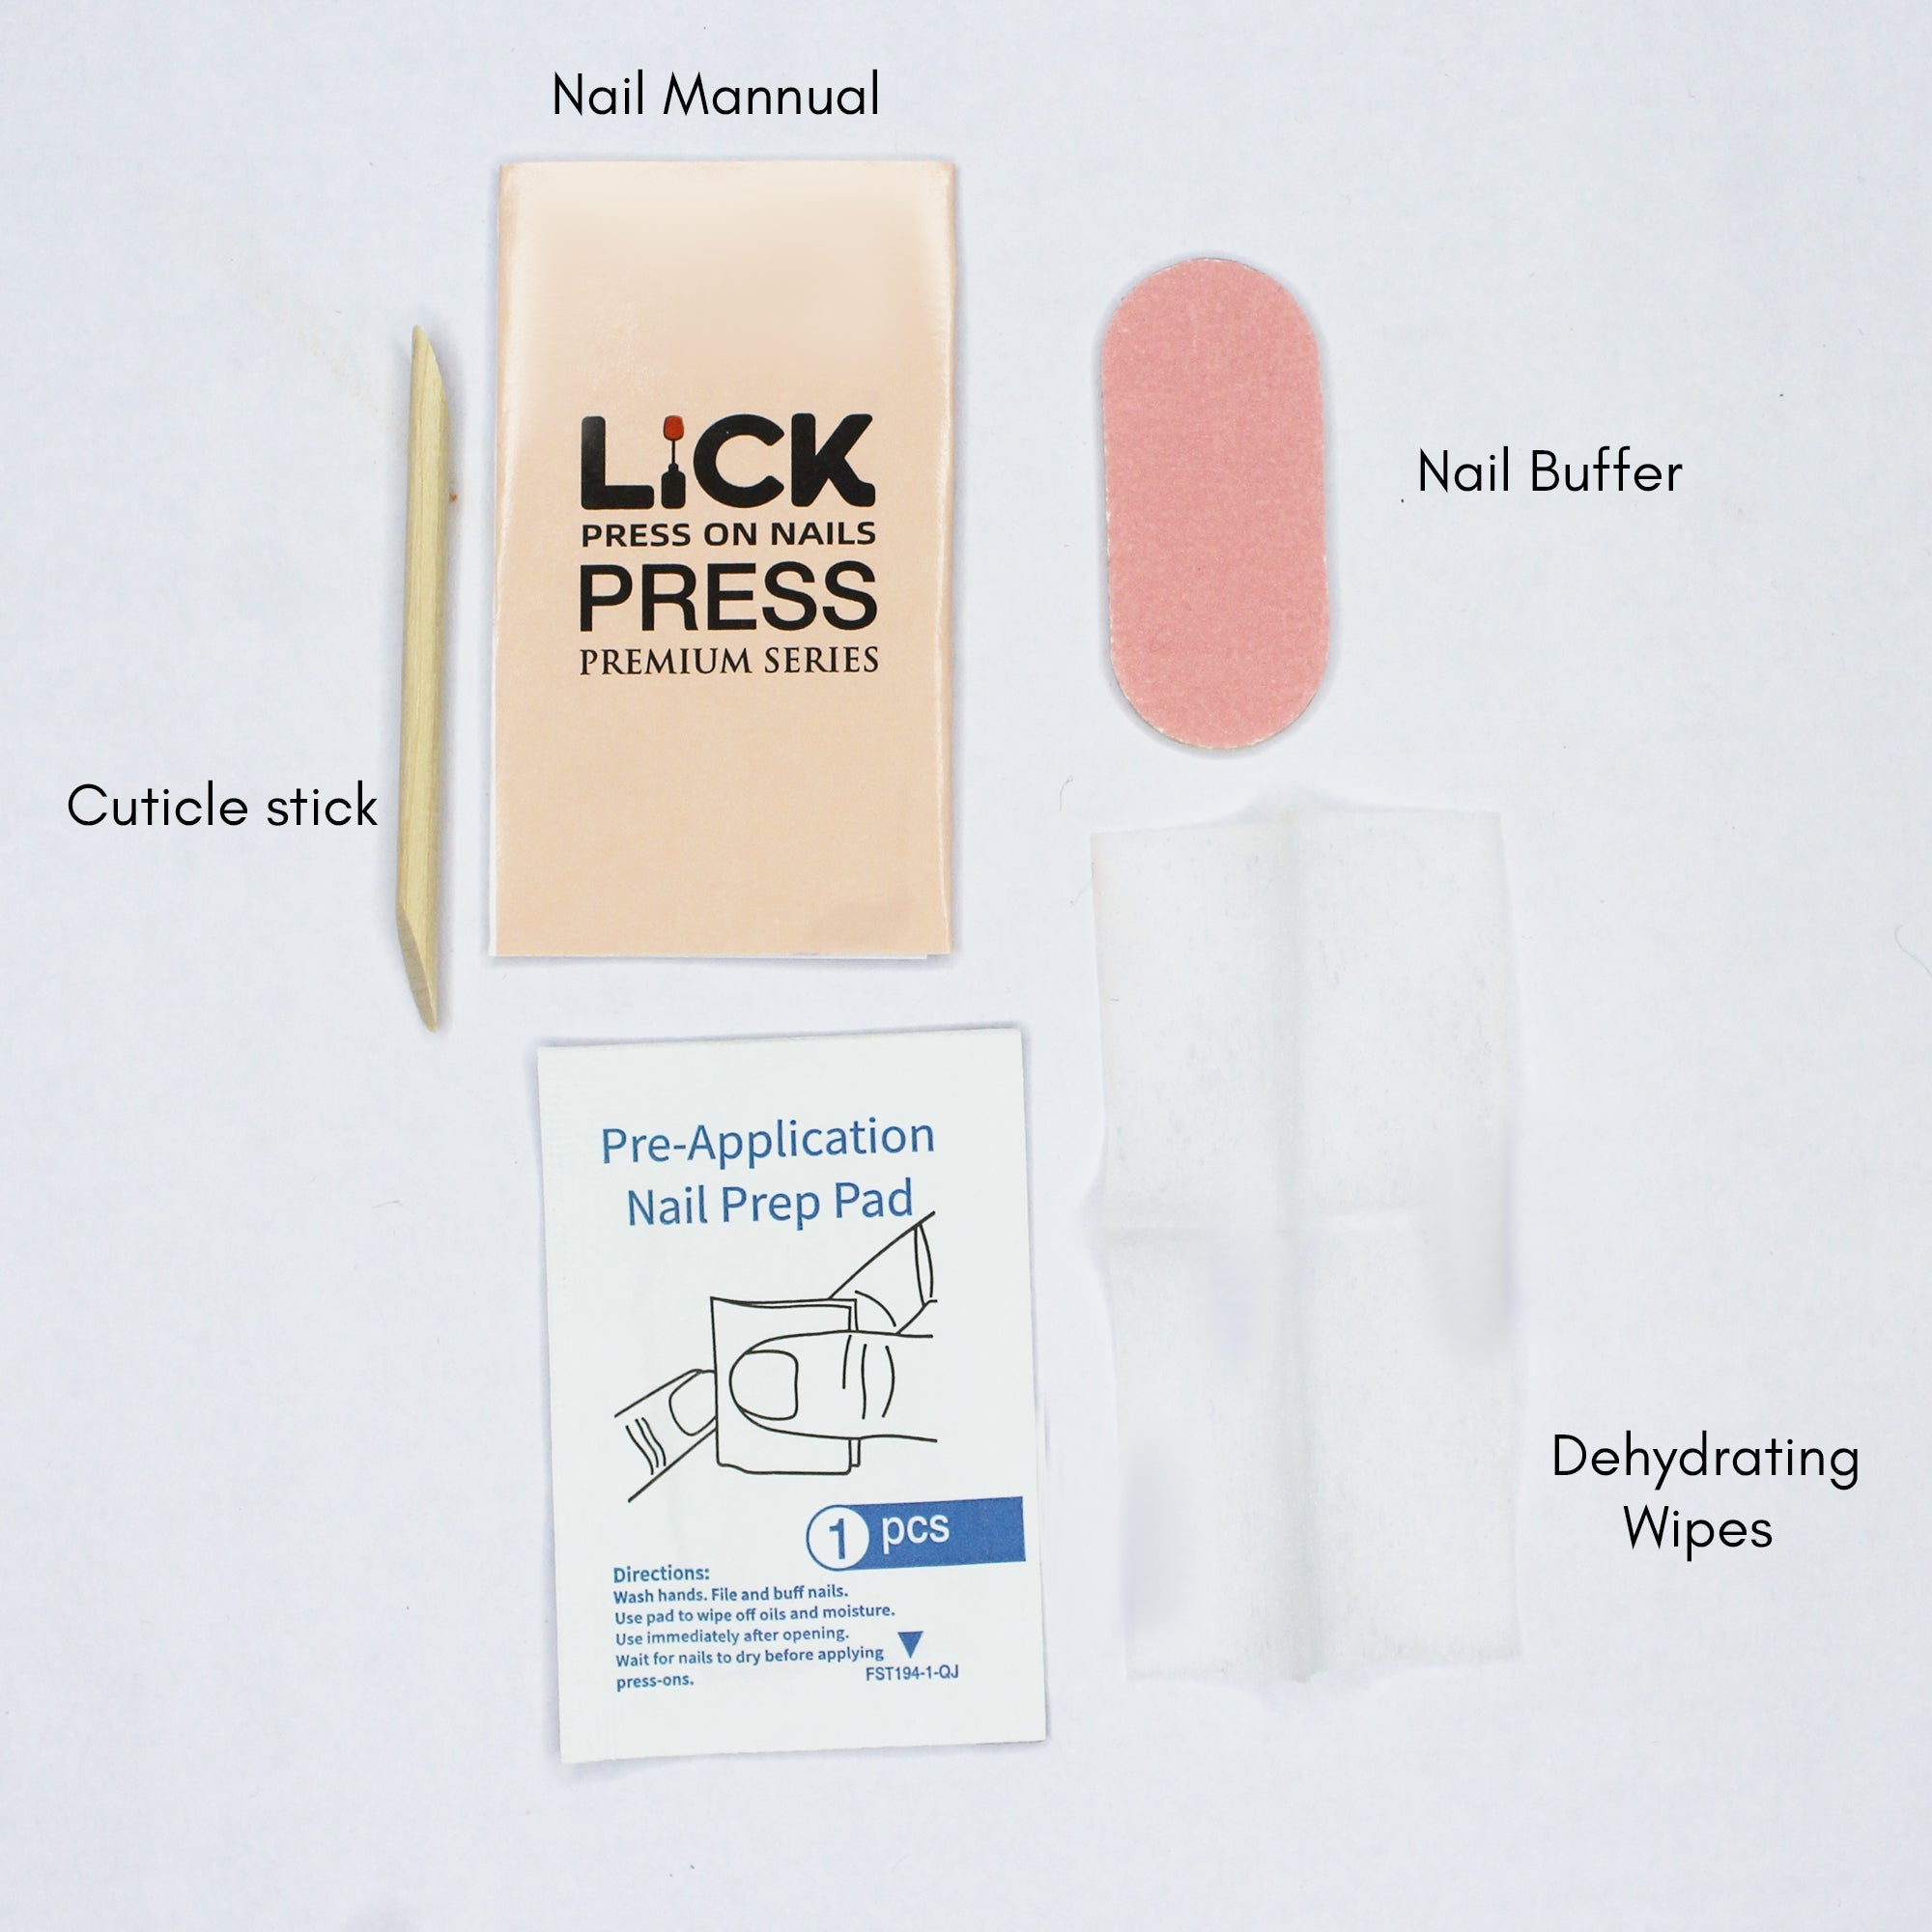 Lick Nail Matte Finish Turquoise Square Shape Press On Nails Pack Of 30 Pcs